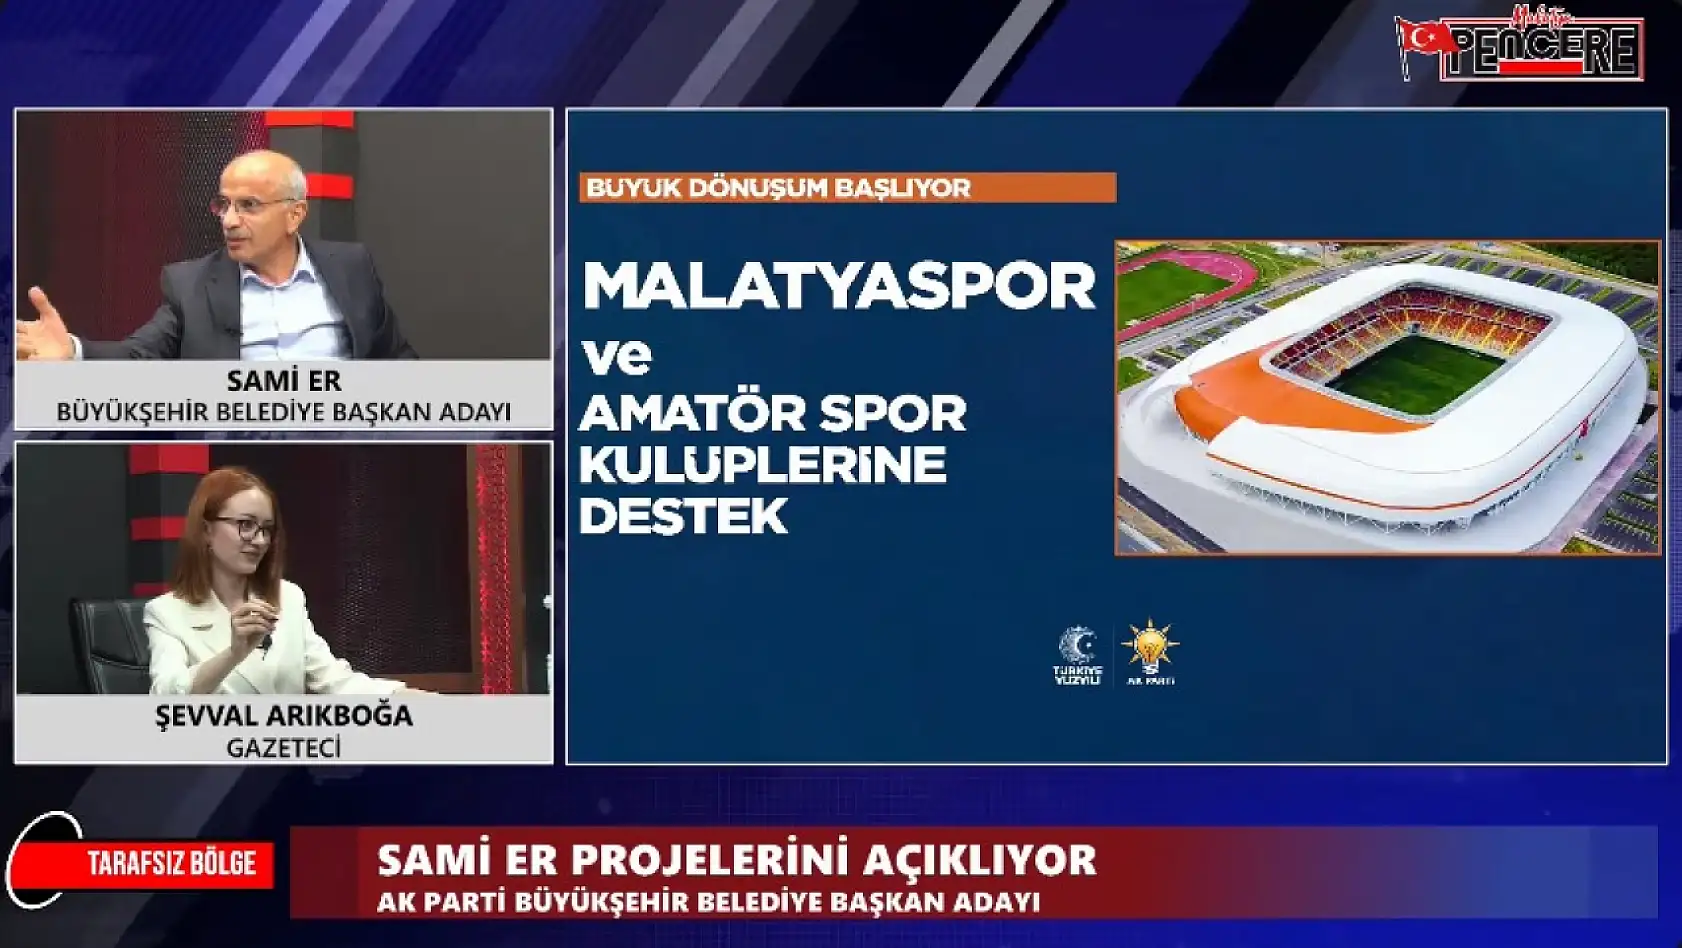 Yeni Malatyaspor'un sorunları bakana iletildi!